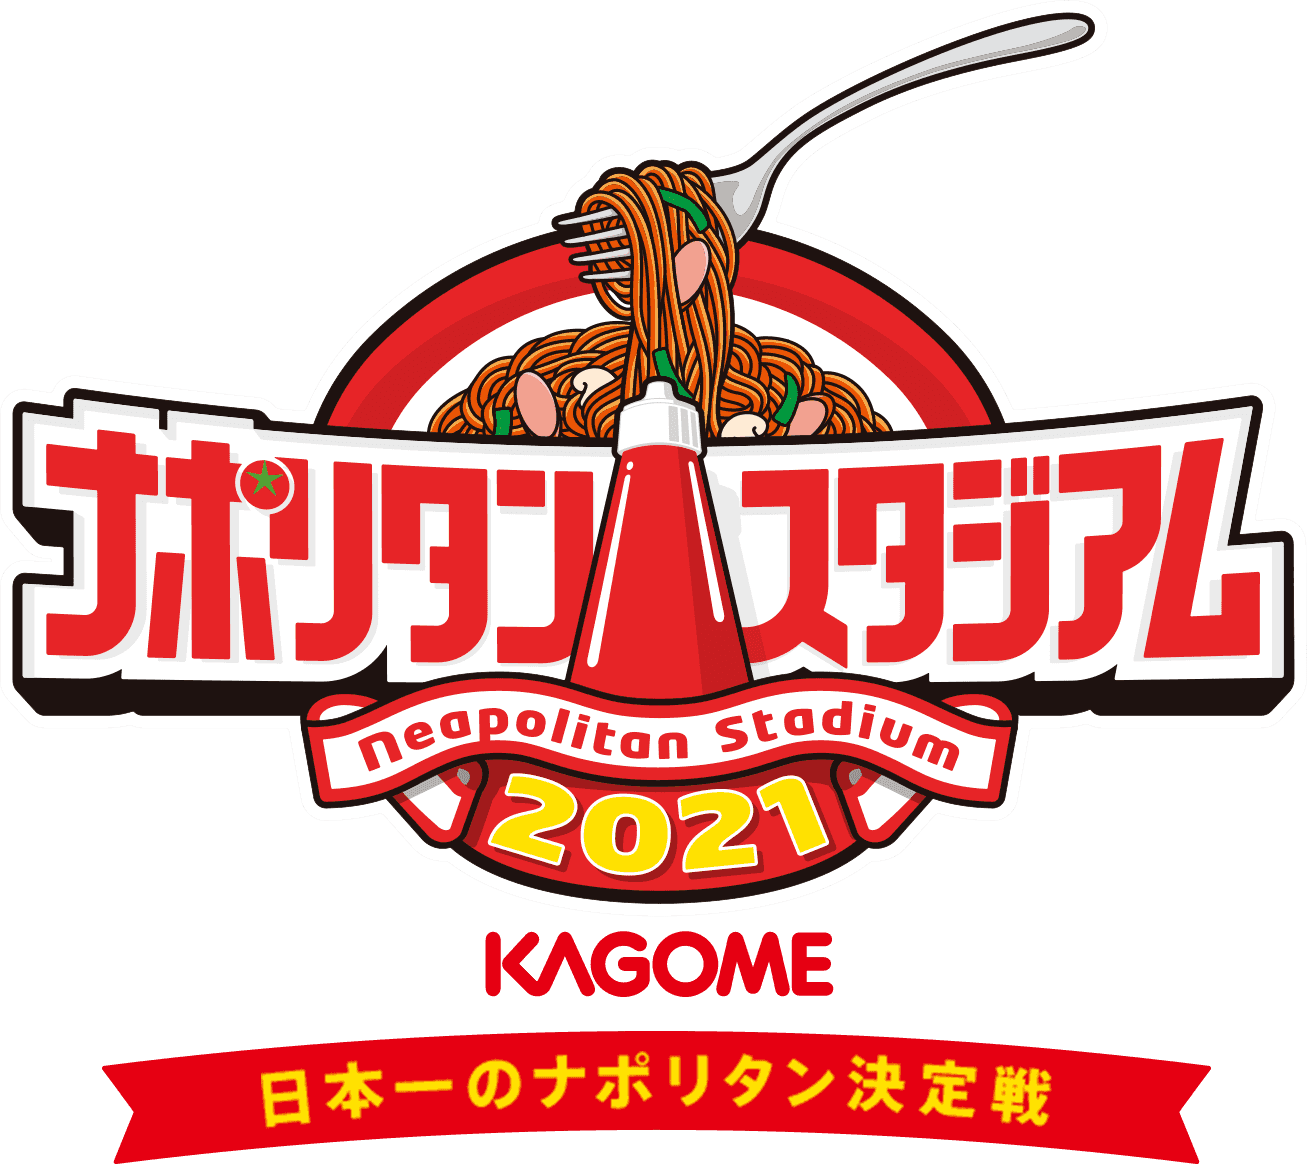 ナポリタンスタジアム2021 KAGOME 日本一のナポリタン決定戦